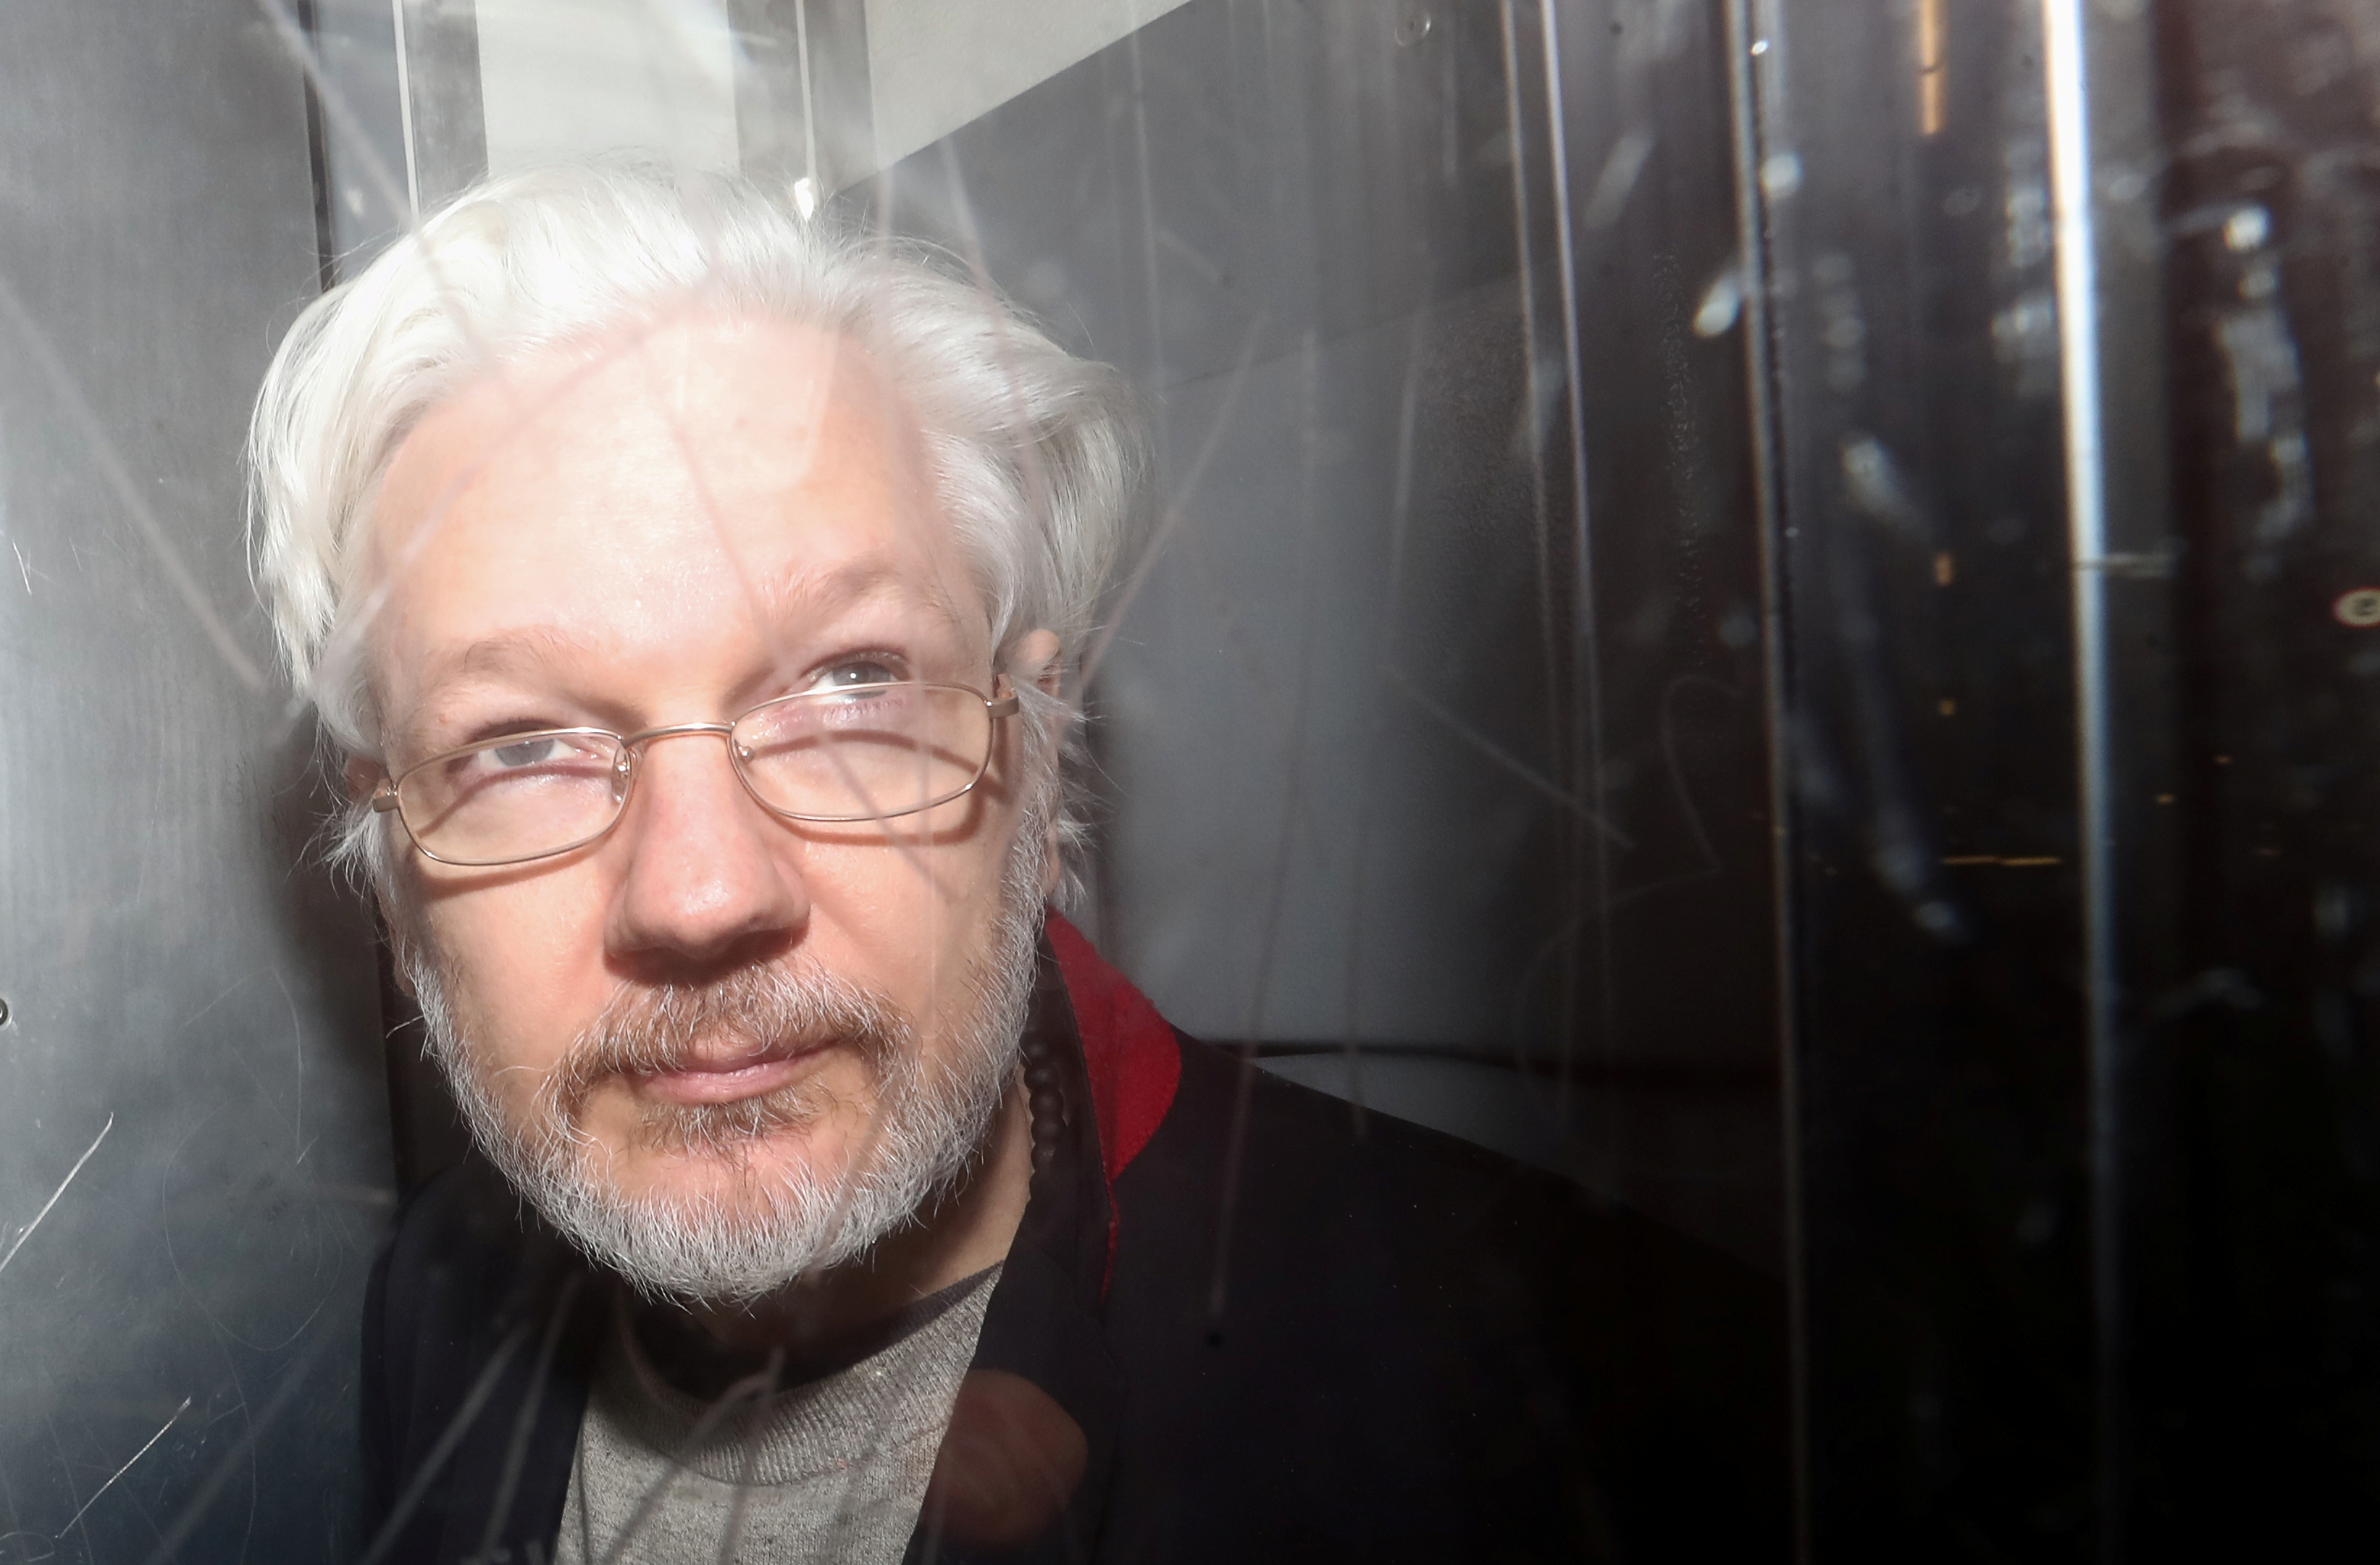 Promesa de asilo a Assange muestra los vaivenes políticos de México